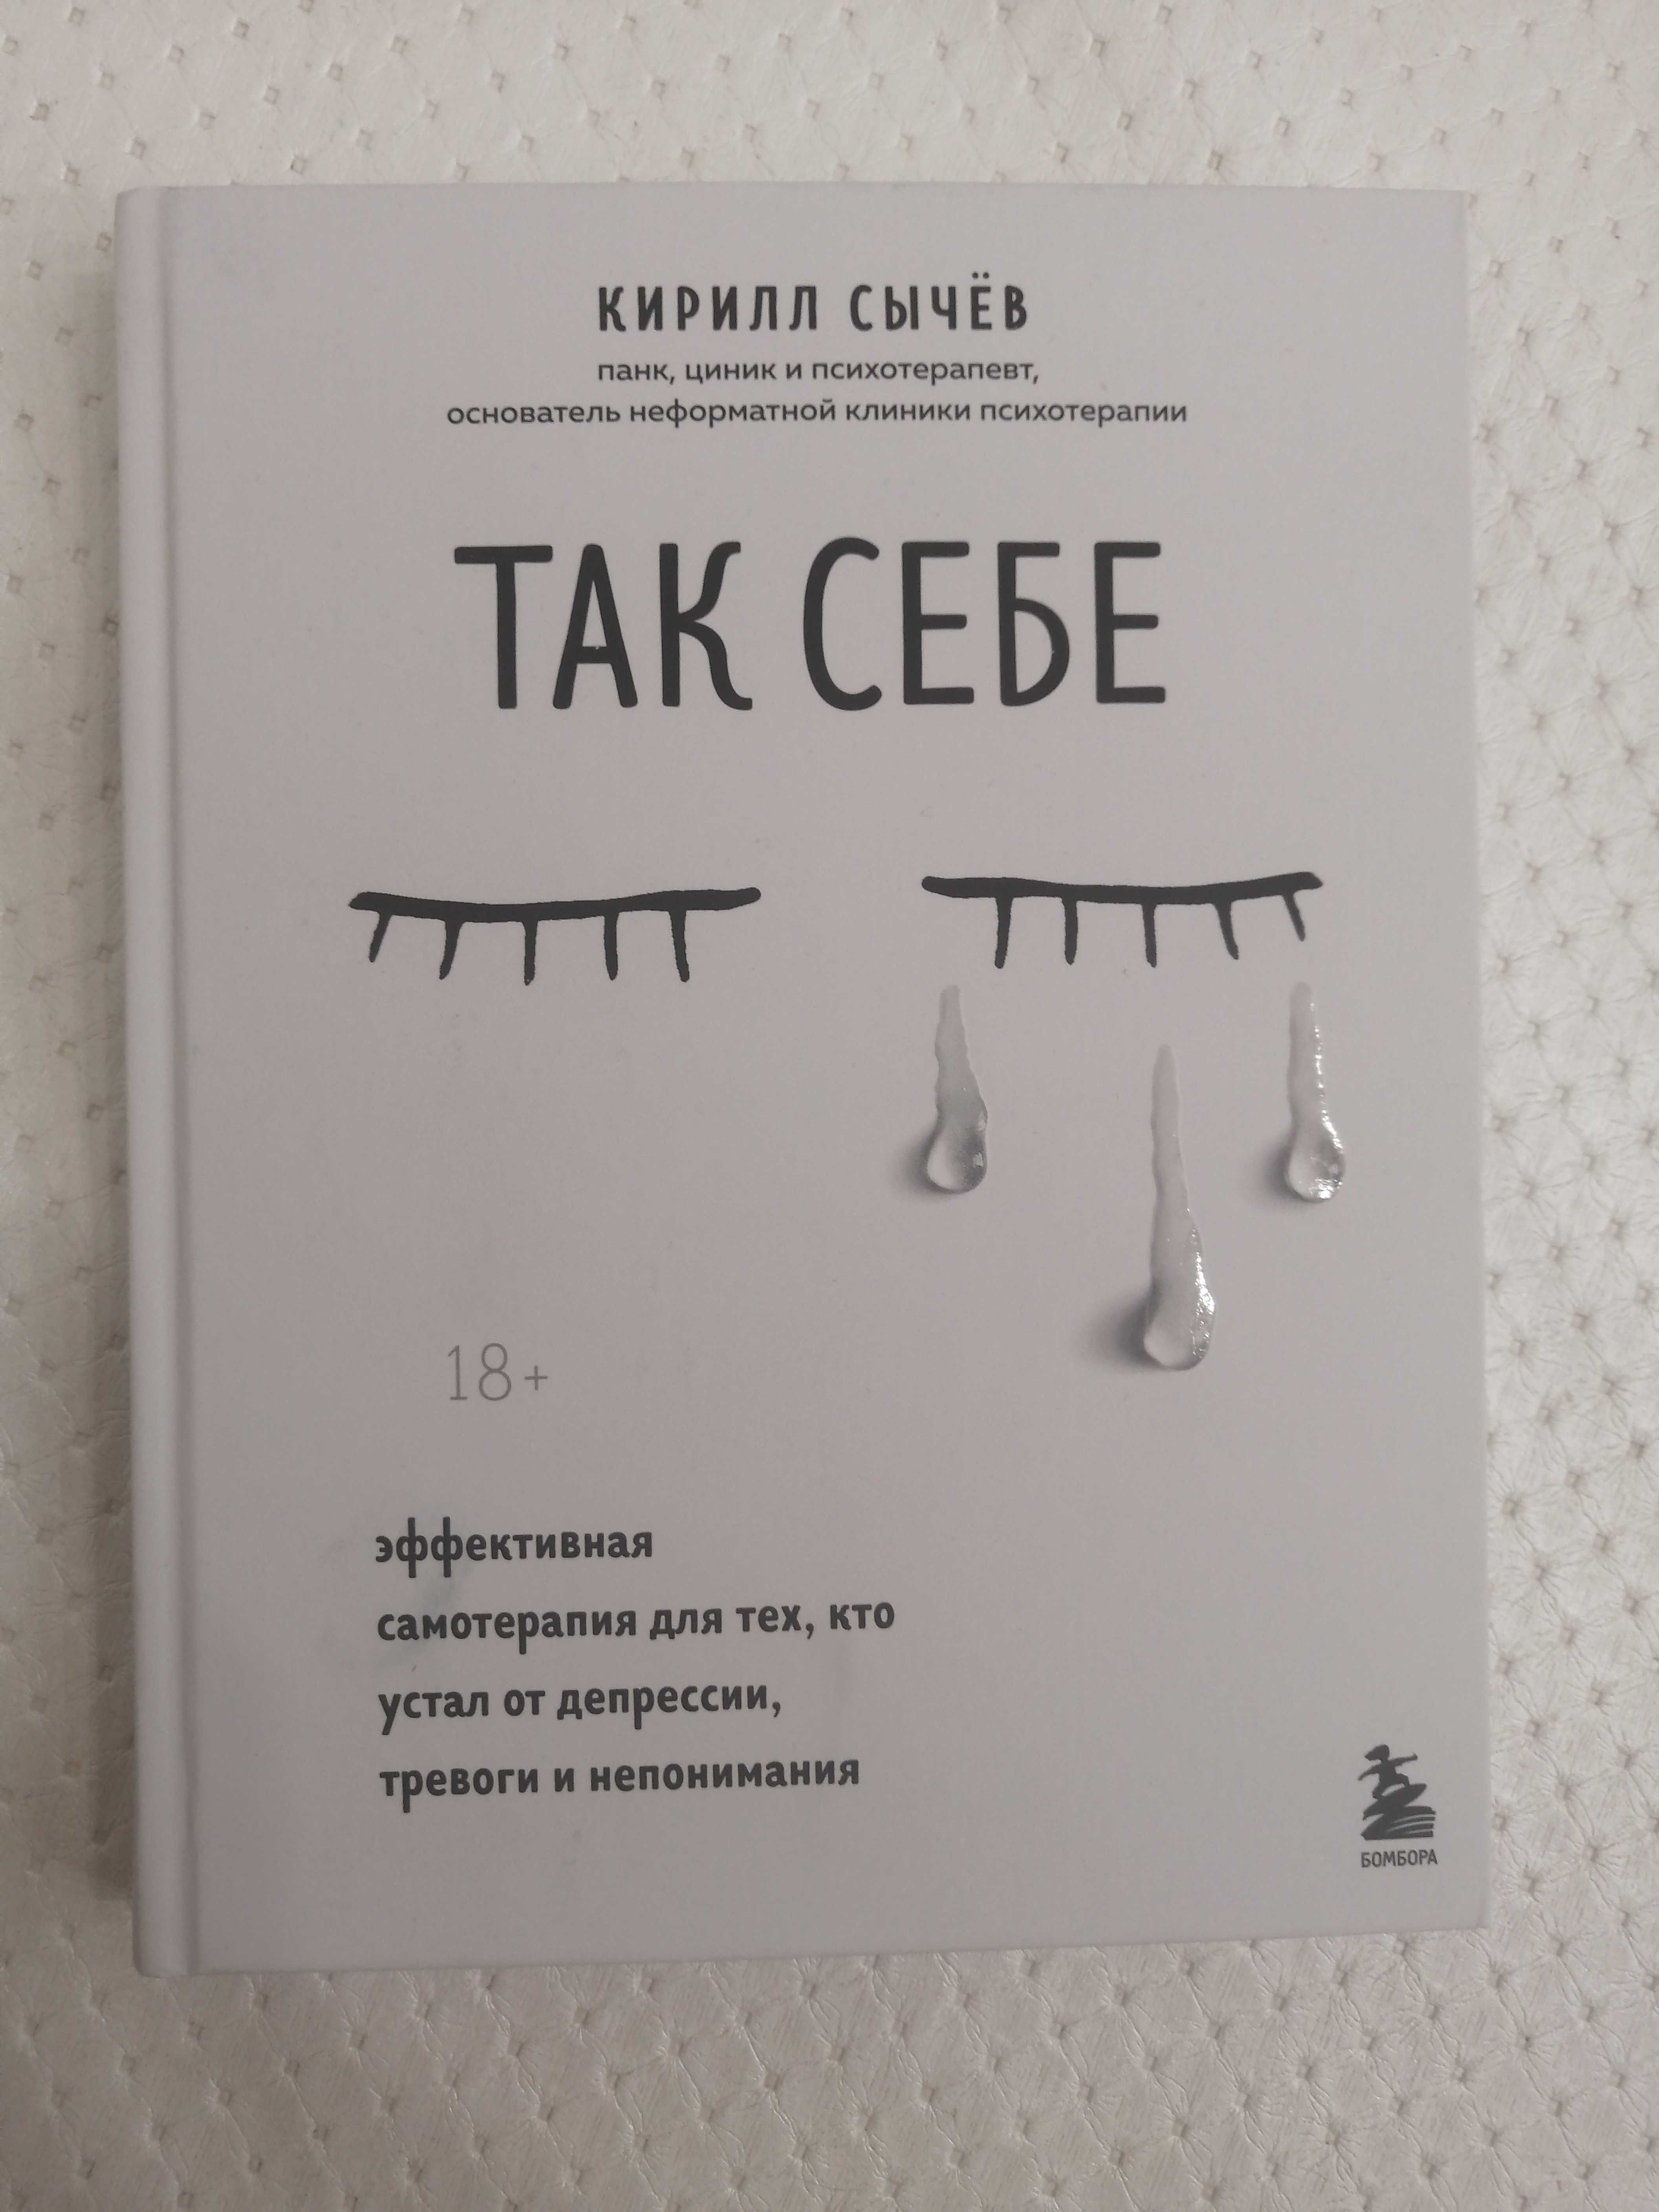 Продаю книгу "Так себе", автор К. СЫЧЕВ